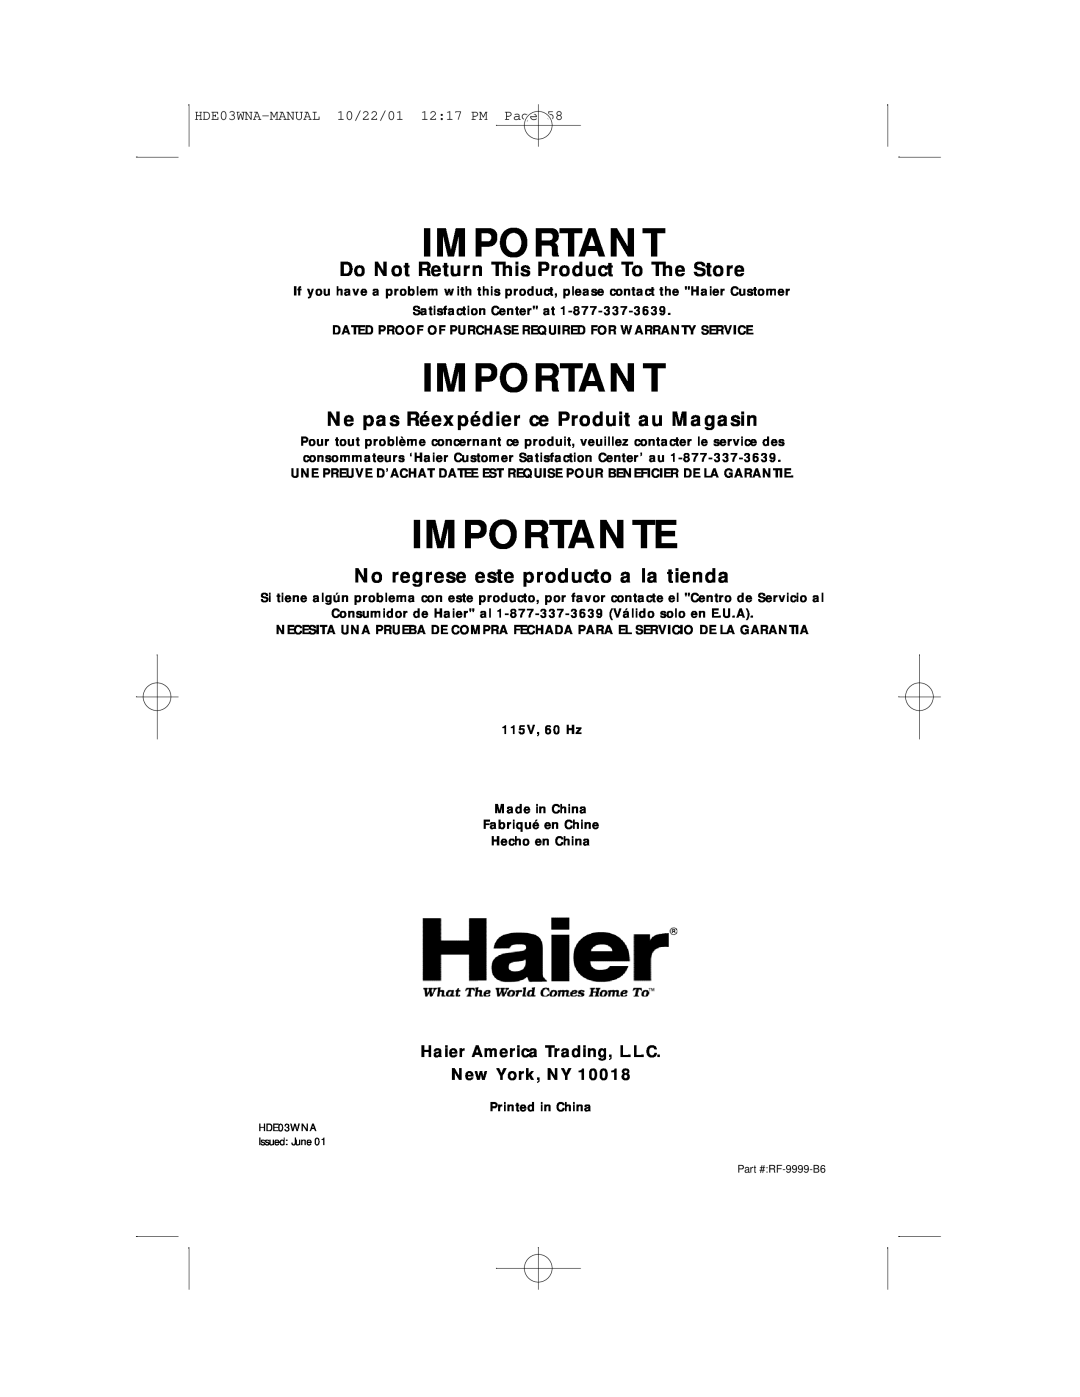 Haier HDE03WNA user manual Importante, Do Not Return This Product To The Store, Ne pas Réexpédier ce Produit au Magasin 